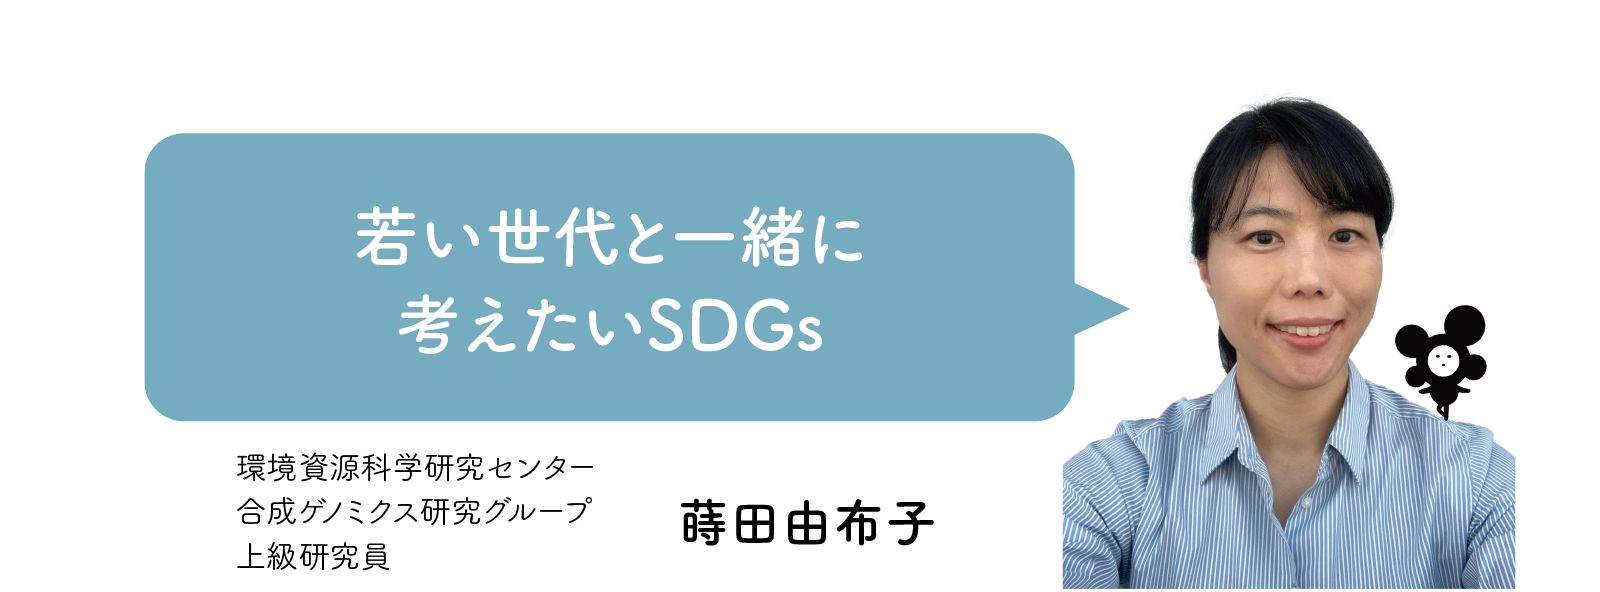 蒔田由布子博士「若い世代と一緒に考えたいSDGs」